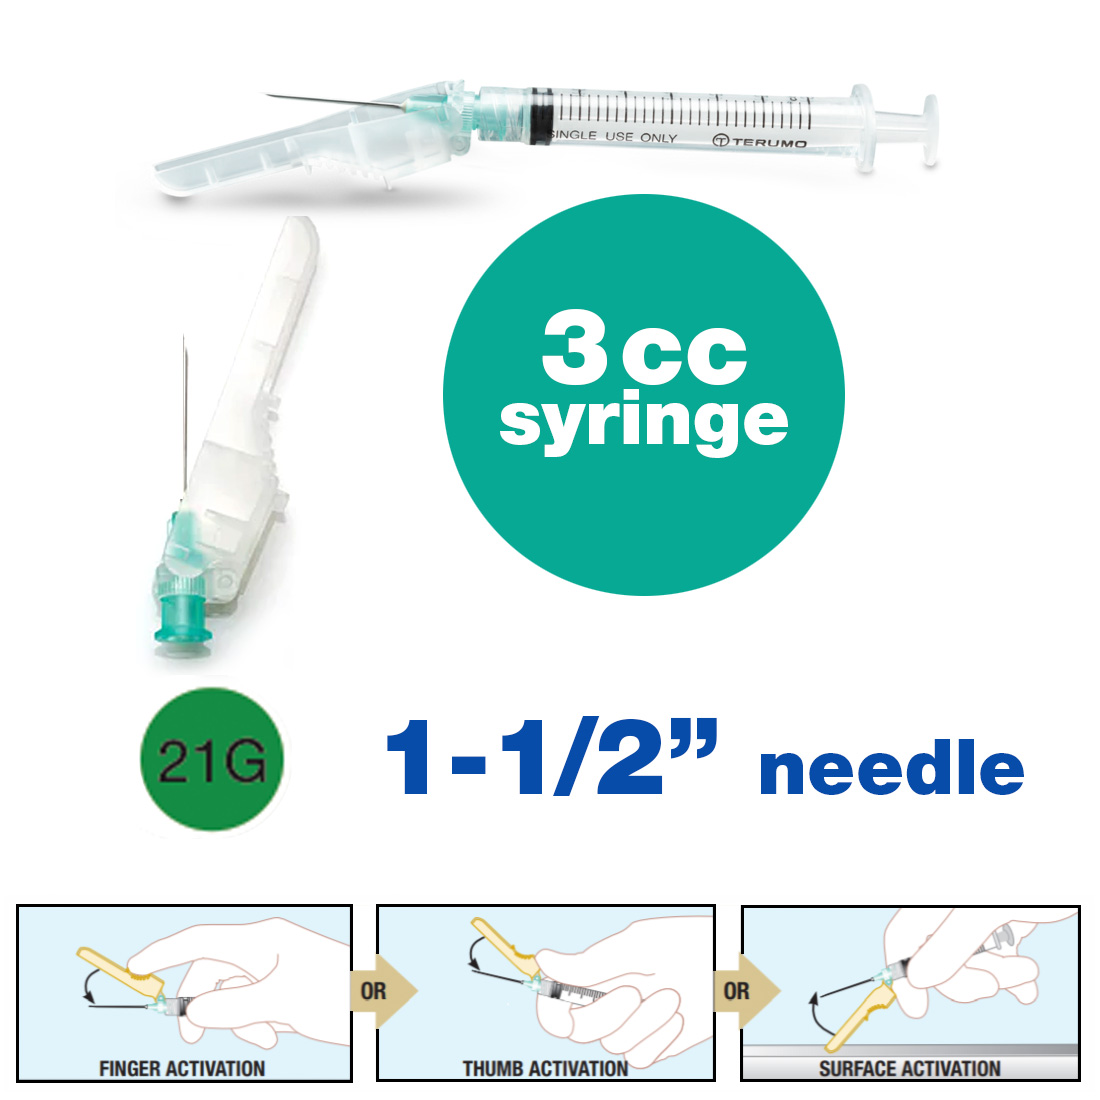 SurGuard® 3 Safety Hypodermic Needle, 3CC Syringe with 21G x 1 1/2" Needle - 100/Box